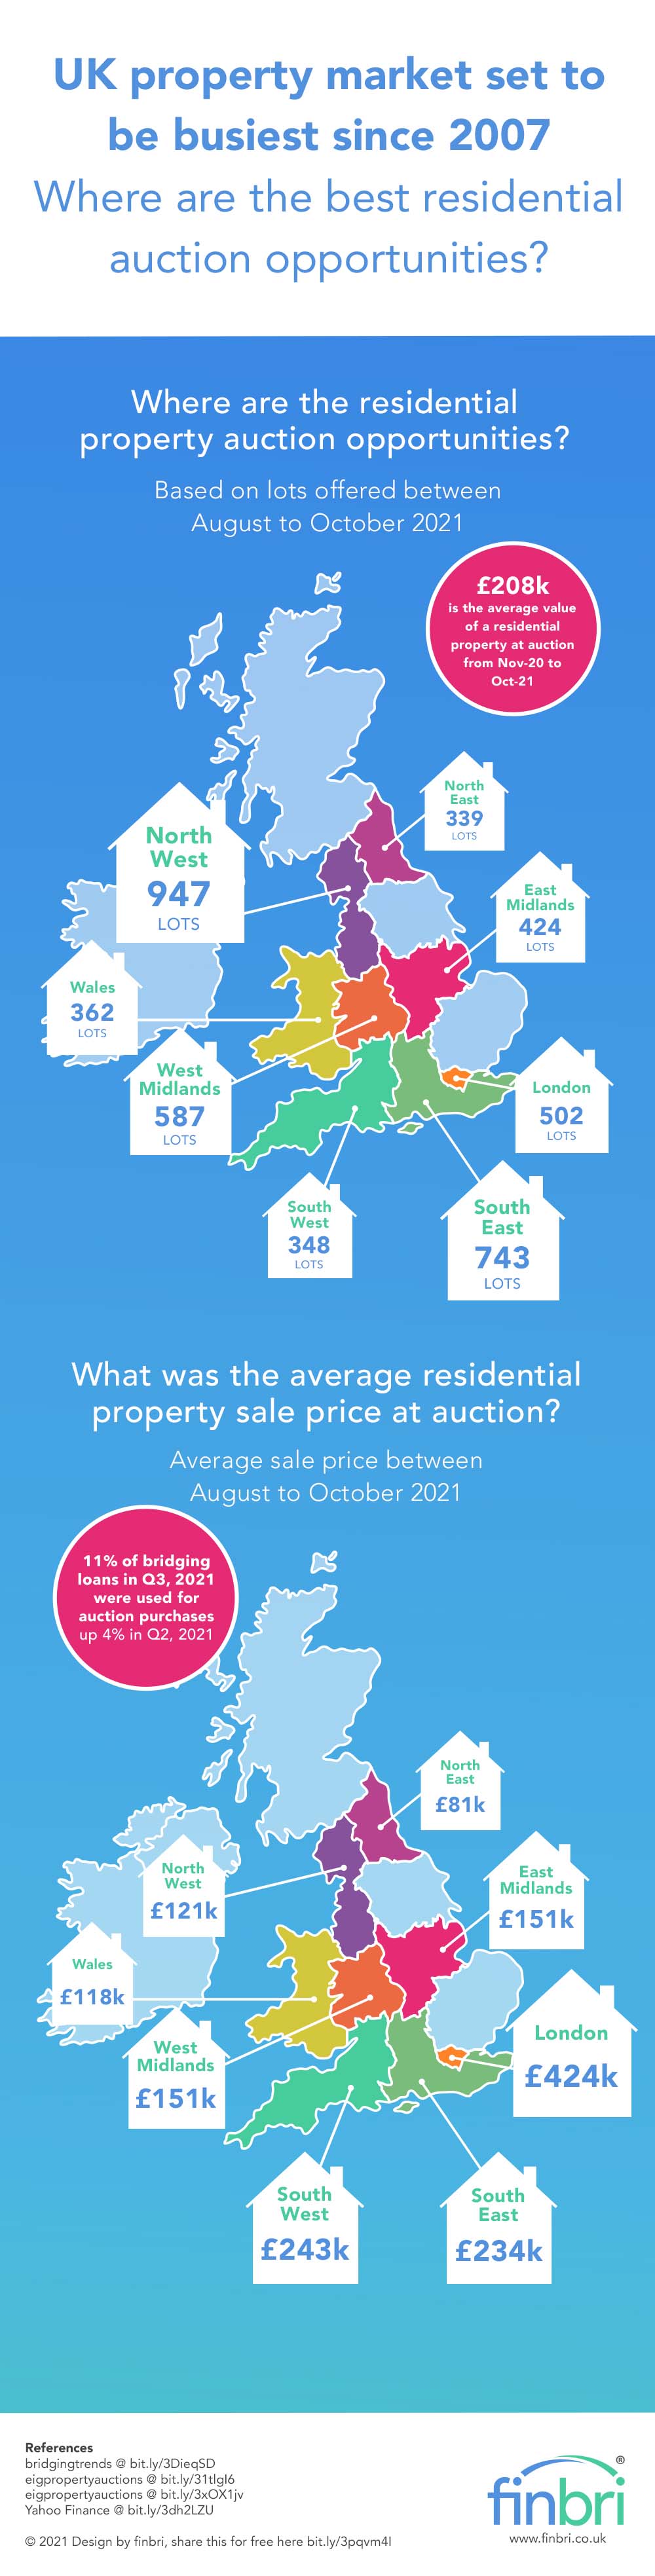 UK property market infographic 